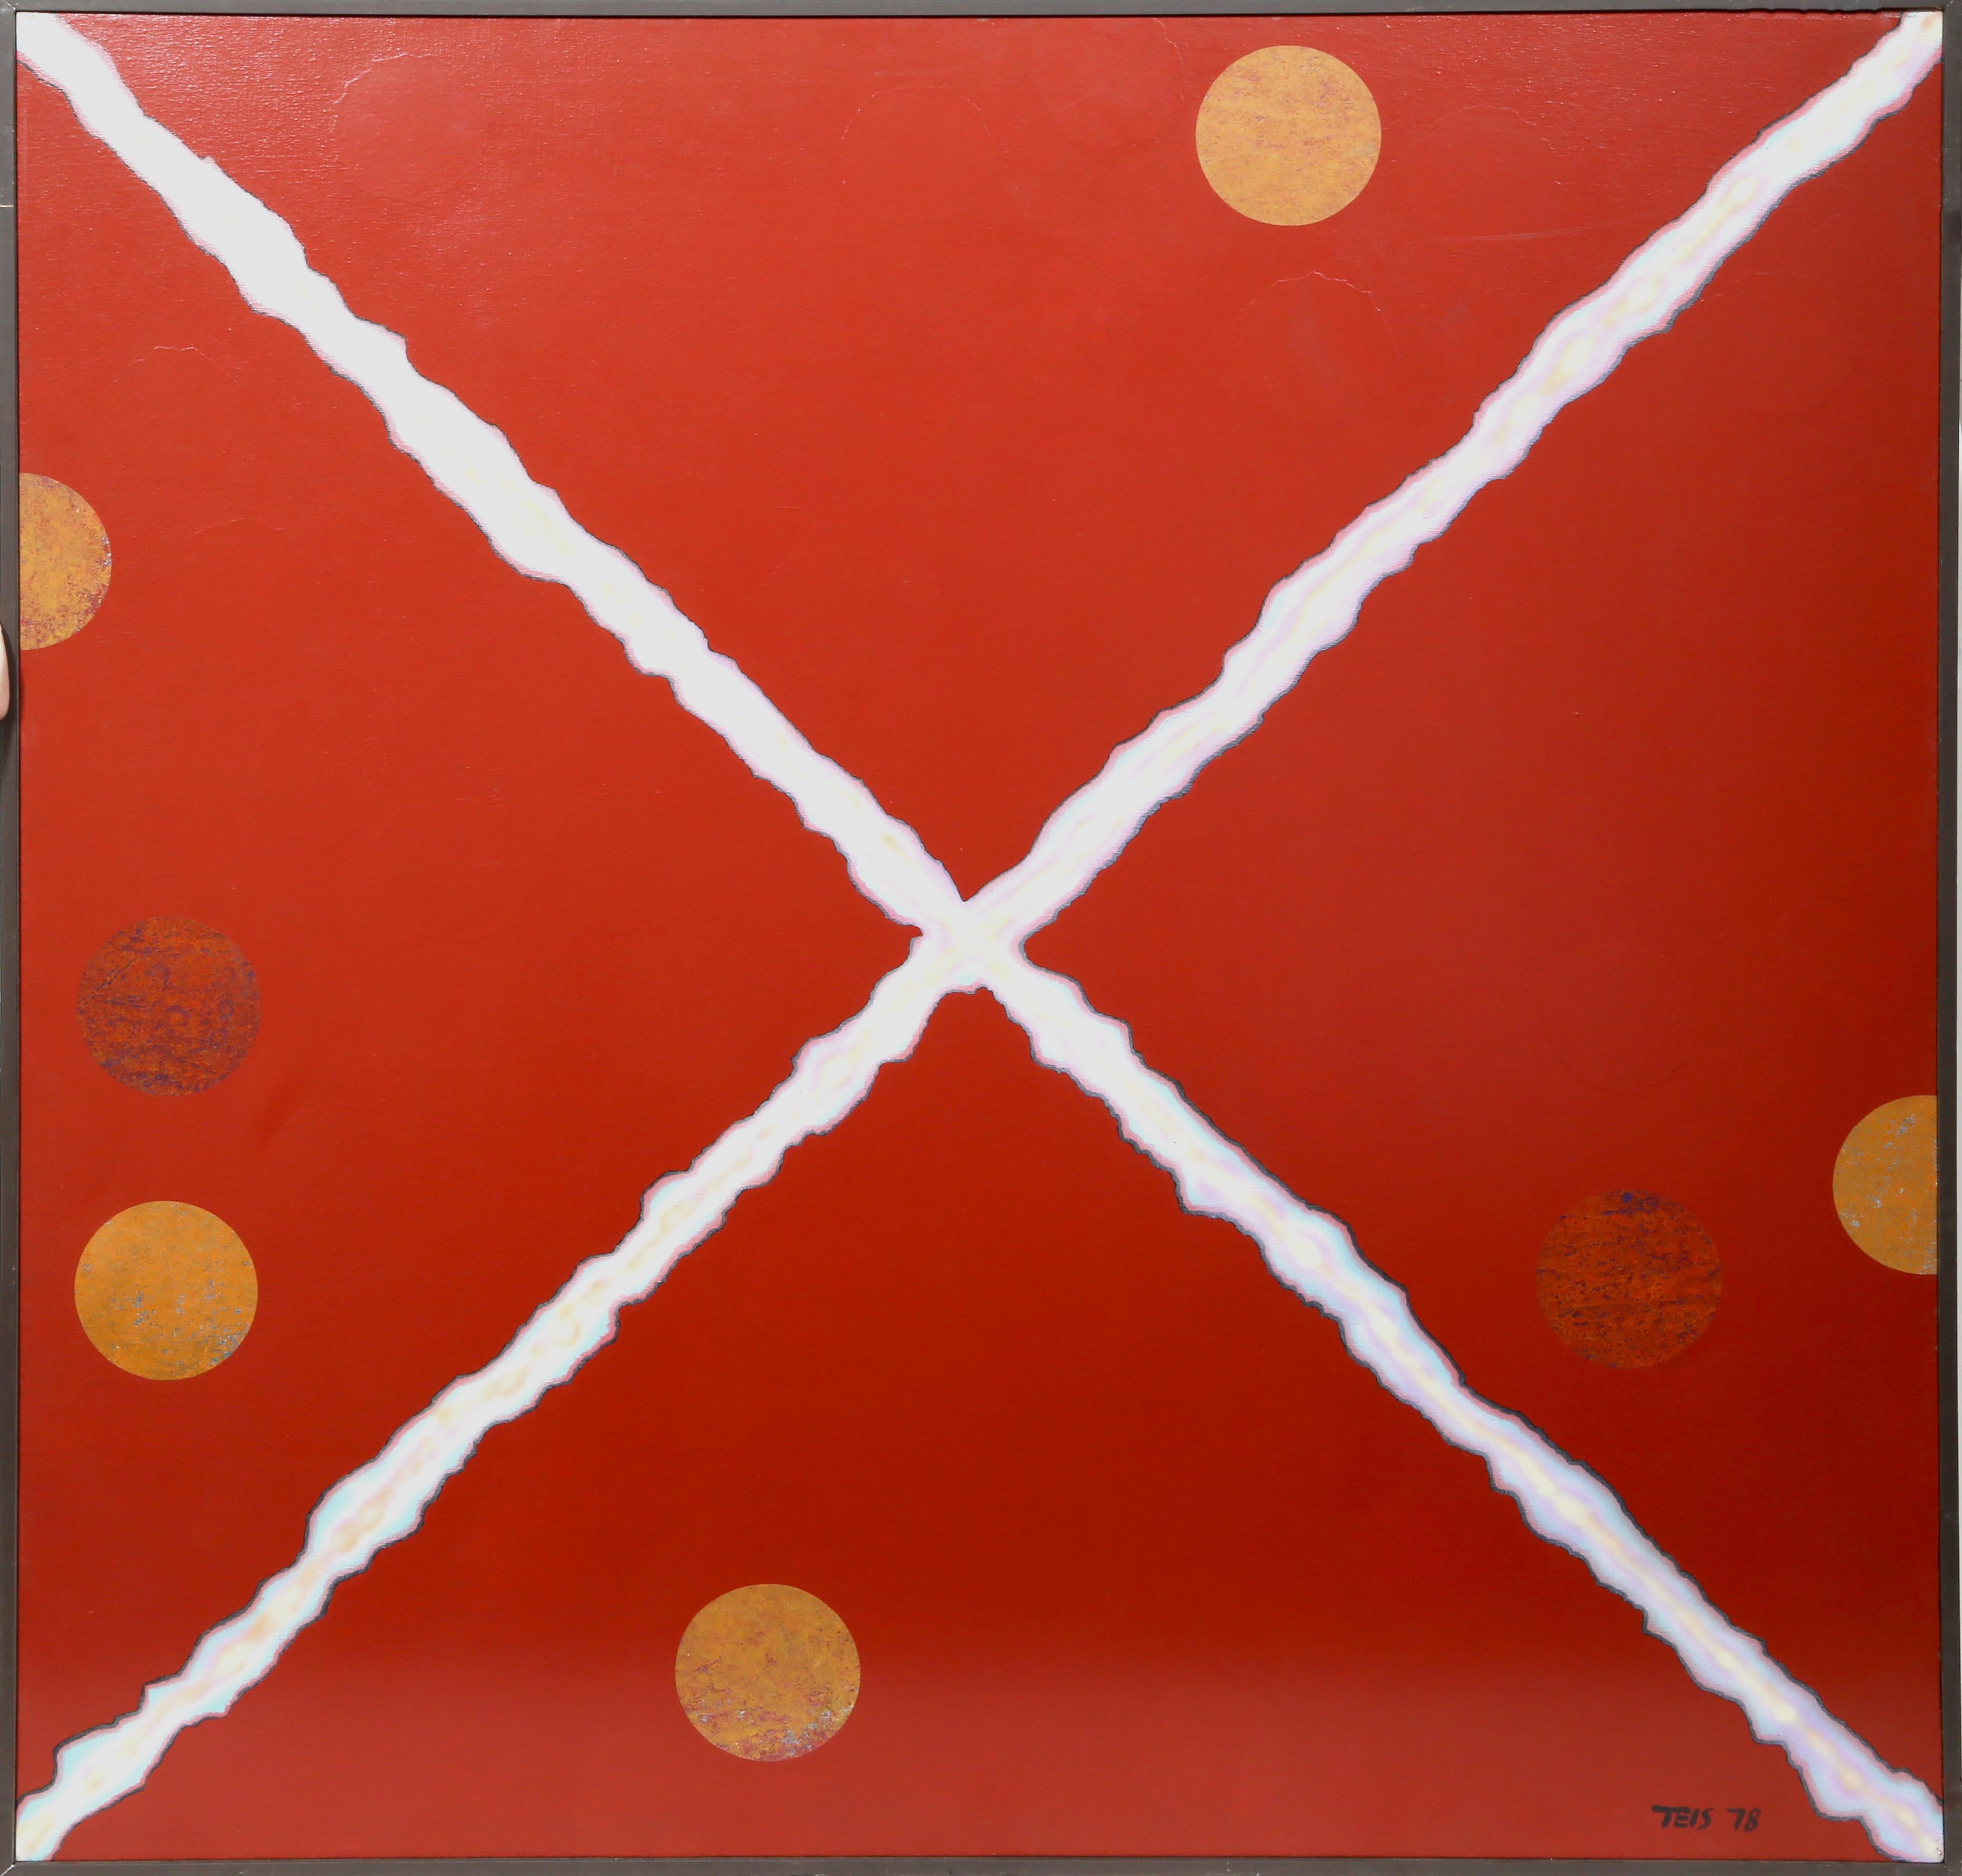 Artiste : Dan Teis, américain (1925 - 2002)
Titre : X blanc sur rouge avec des points orange
Année : 1978
Moyen : Acrylique sur toile, signé à droite.
Taille : 54 x 54 in. (137,16 x 137,16 cm)
Taille du cadre : 55 x 55 pouces